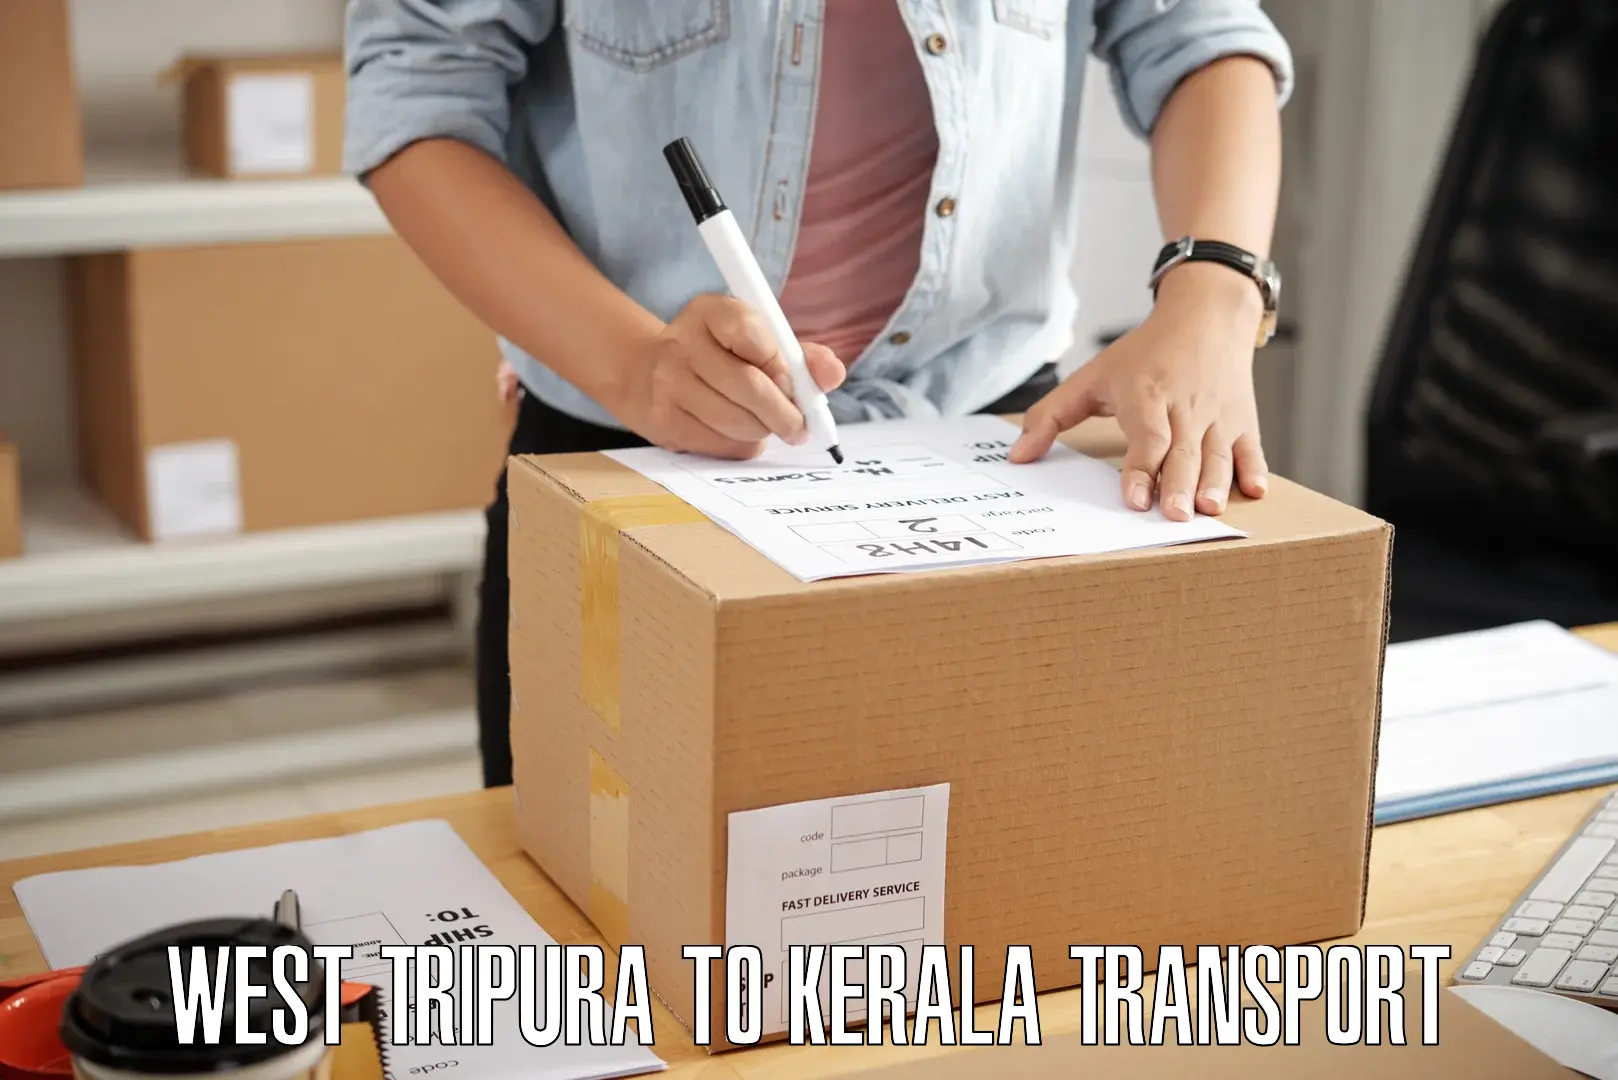 Furniture transport service West Tripura to Calicut